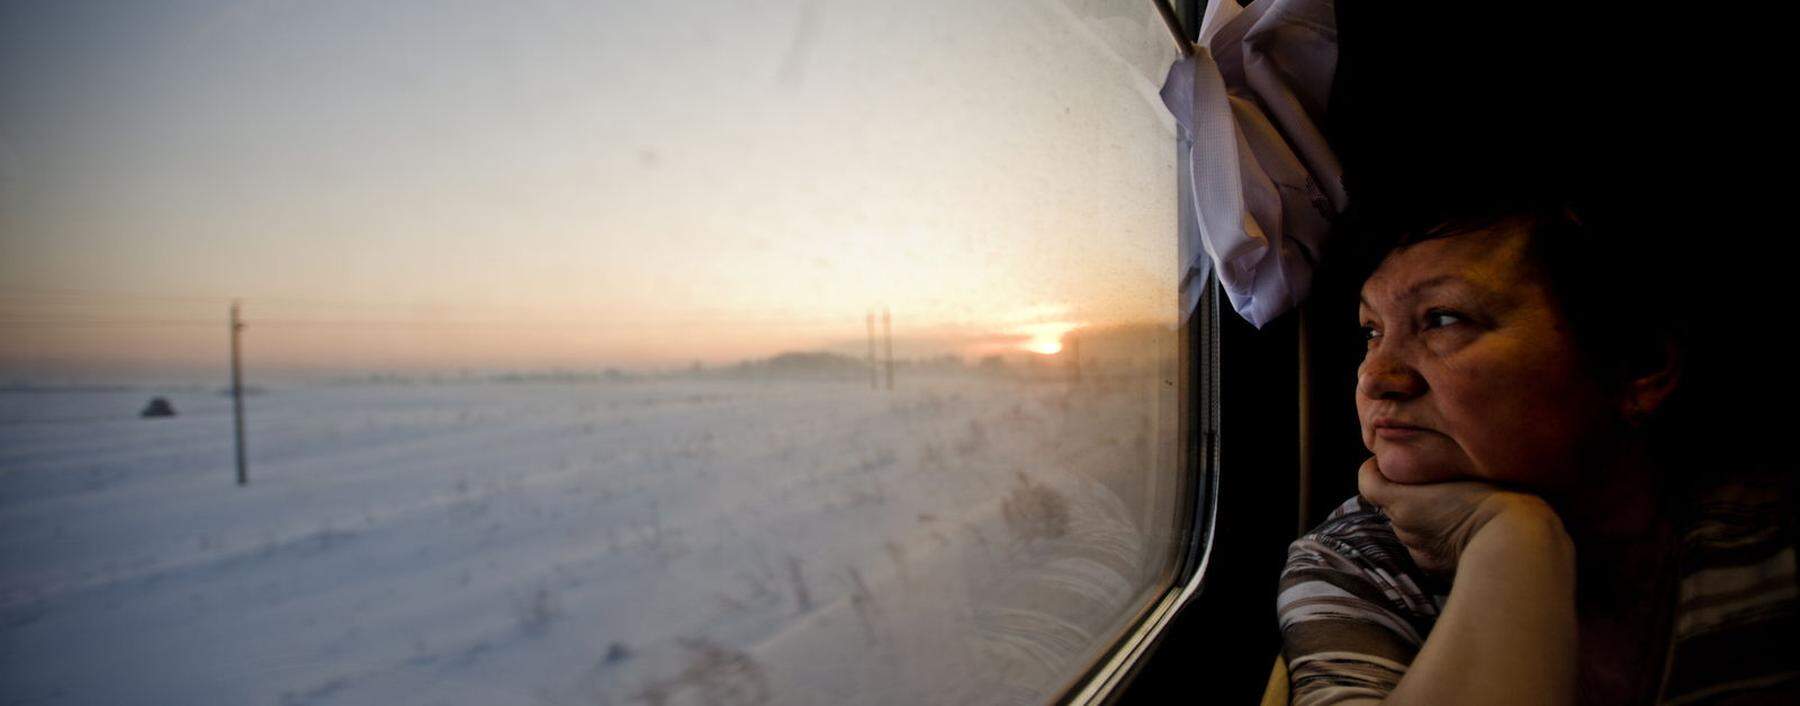 Der Zug springt zwischen den Zeitzonen – und vor dem Fenster liegt endlose Weite.